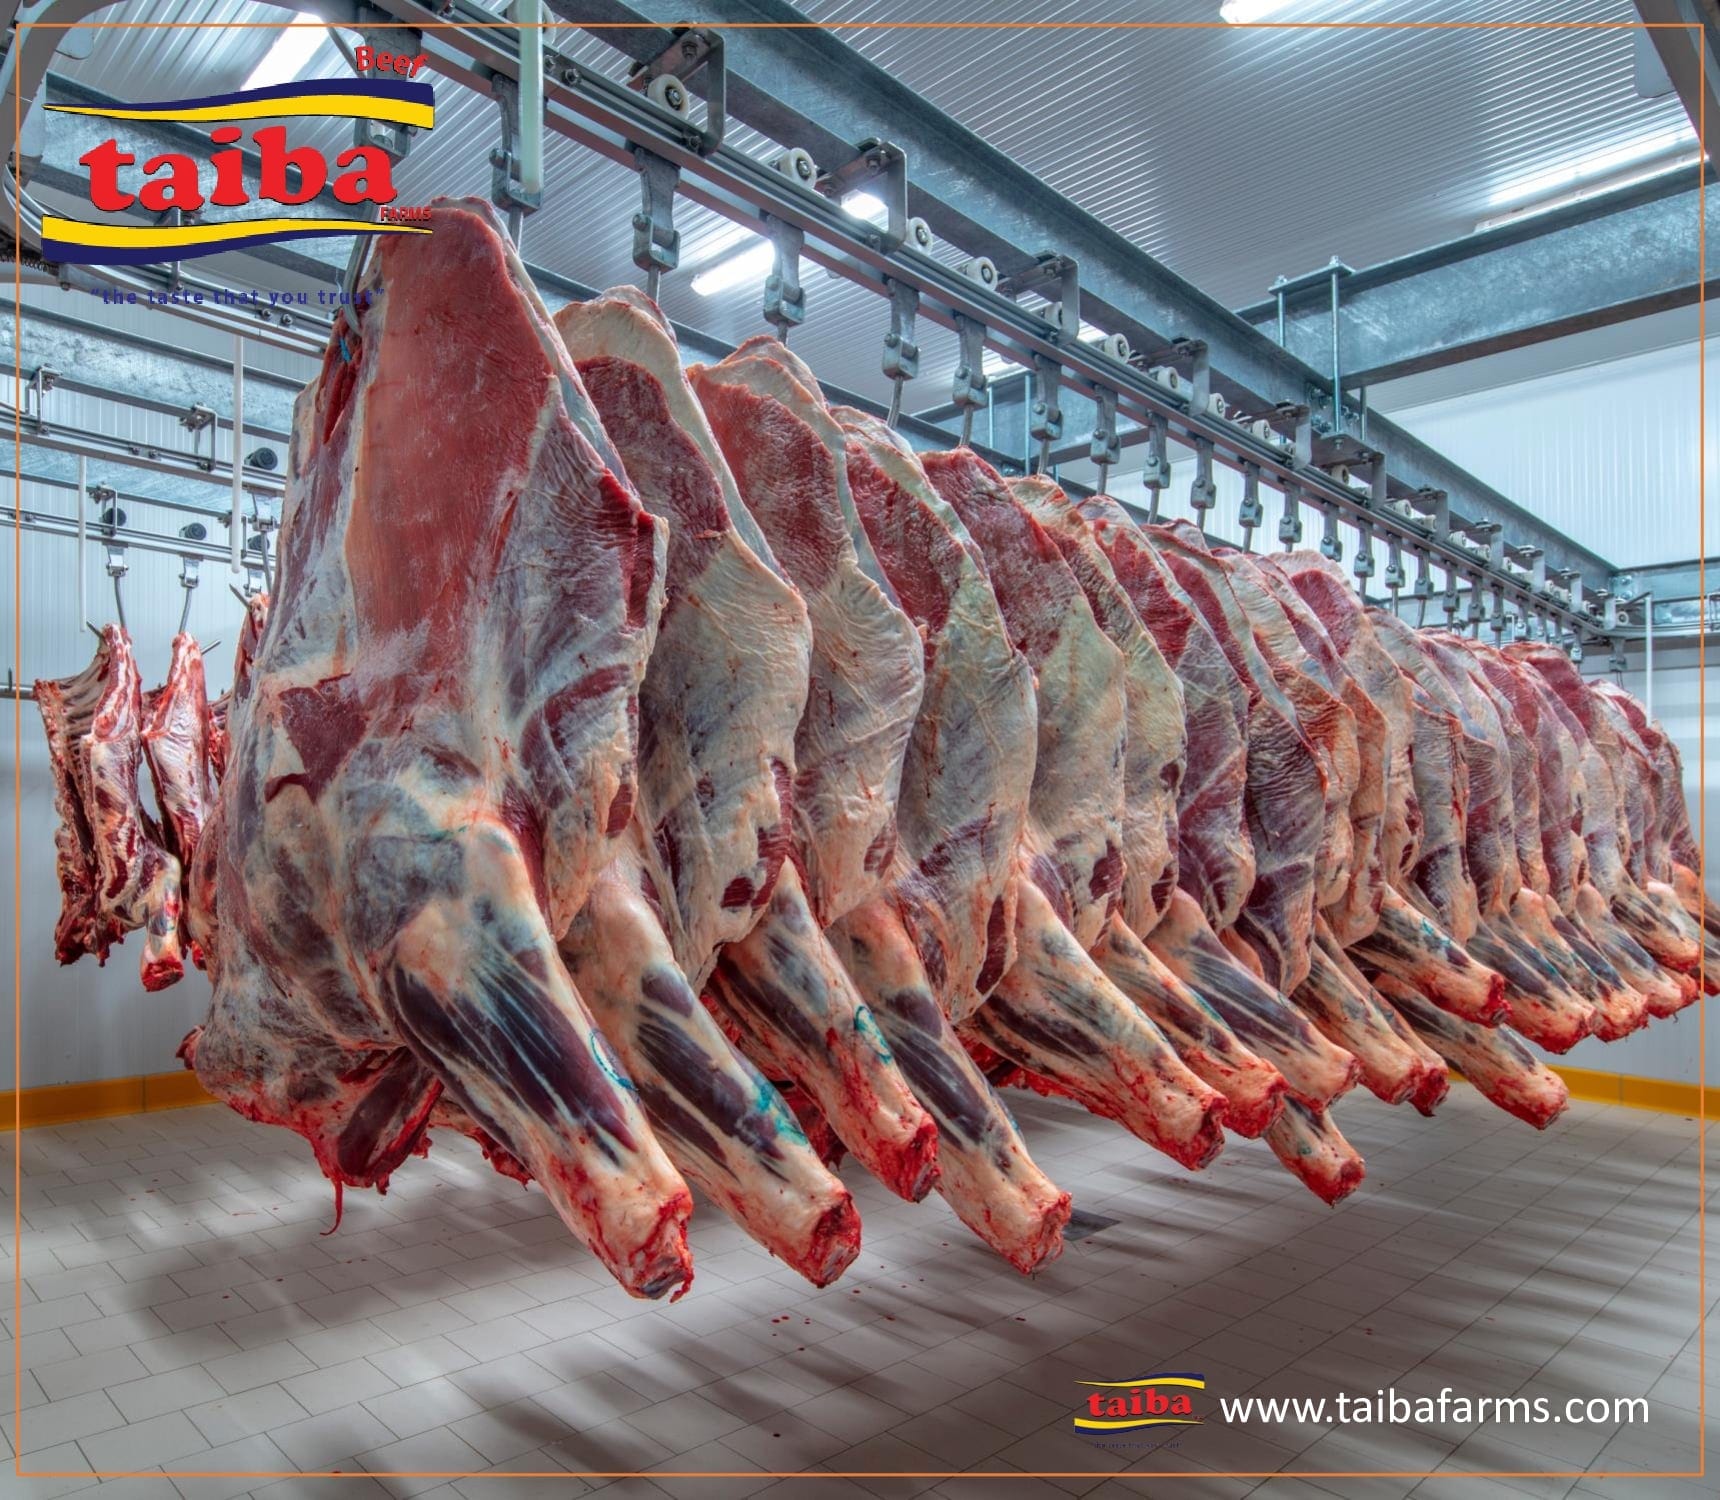 Qualidade, produtores de carne e fornecedores e empresas grossistas